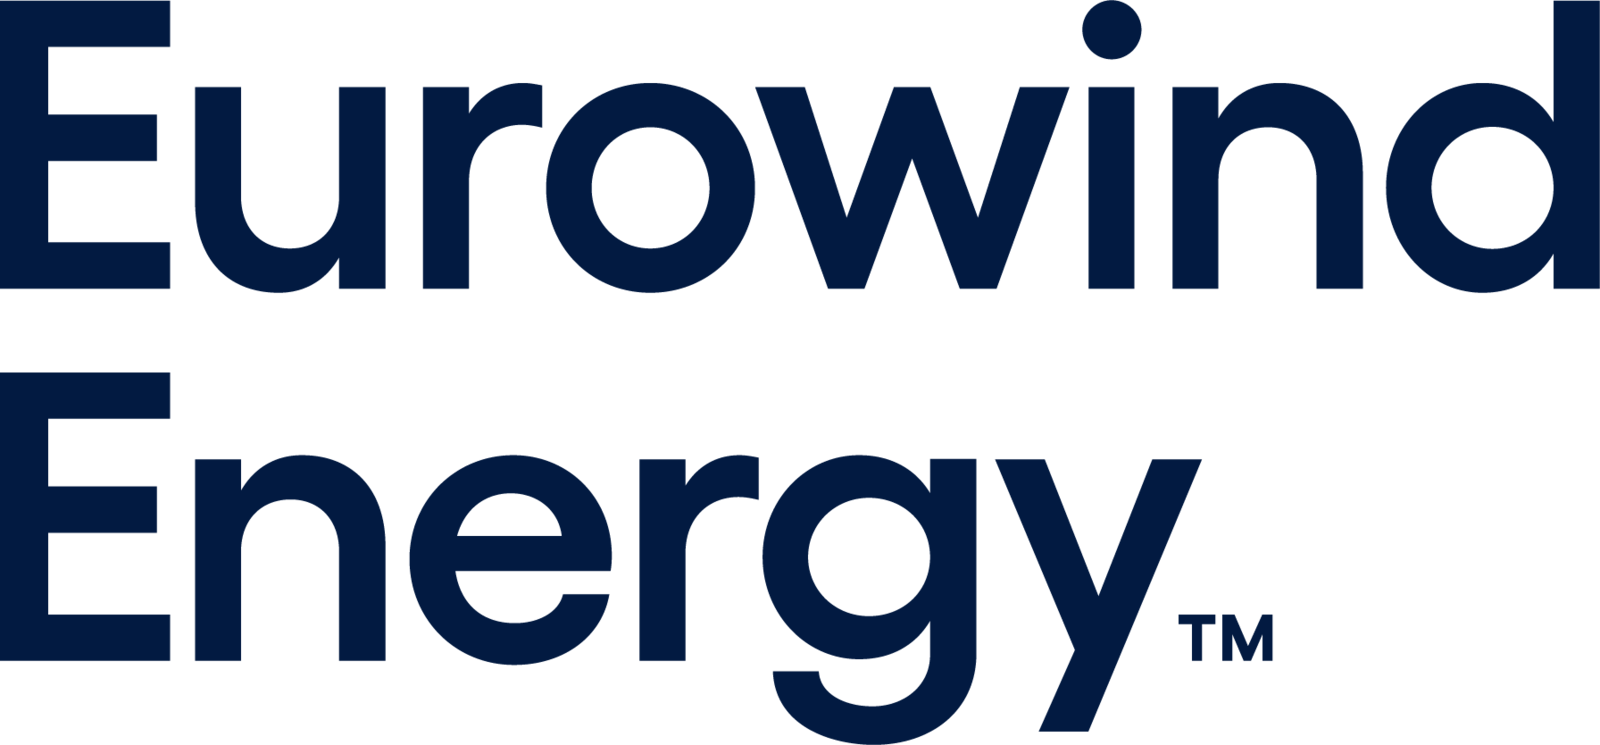 Eurowind Energy logo